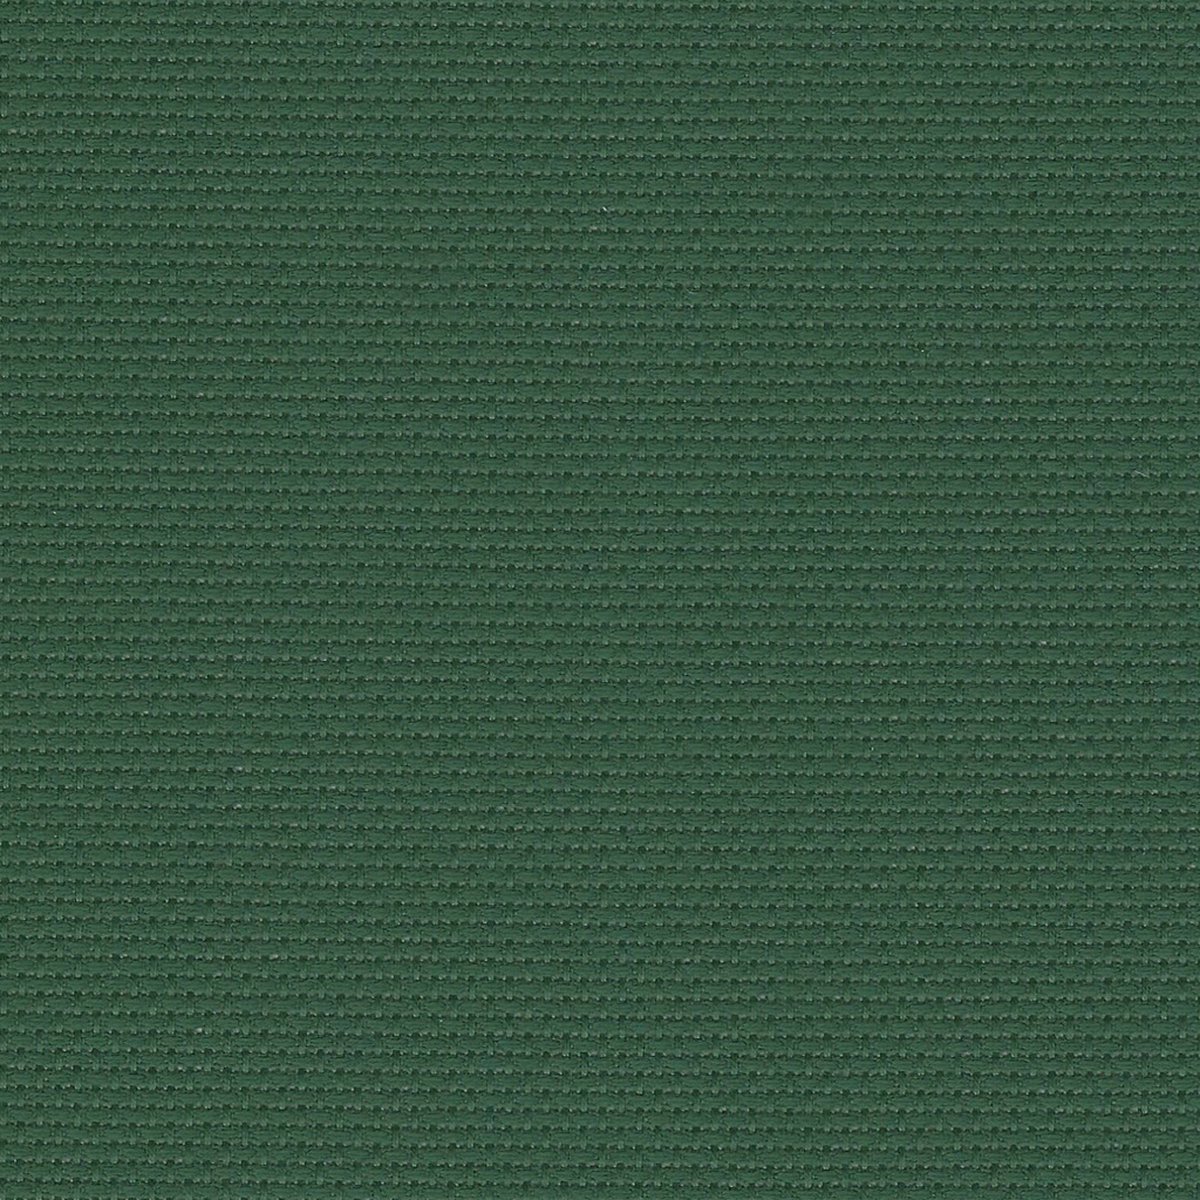 Stern Aida 110 cm breed Groen 3706-6037 14 Count per halve meter te bestellen